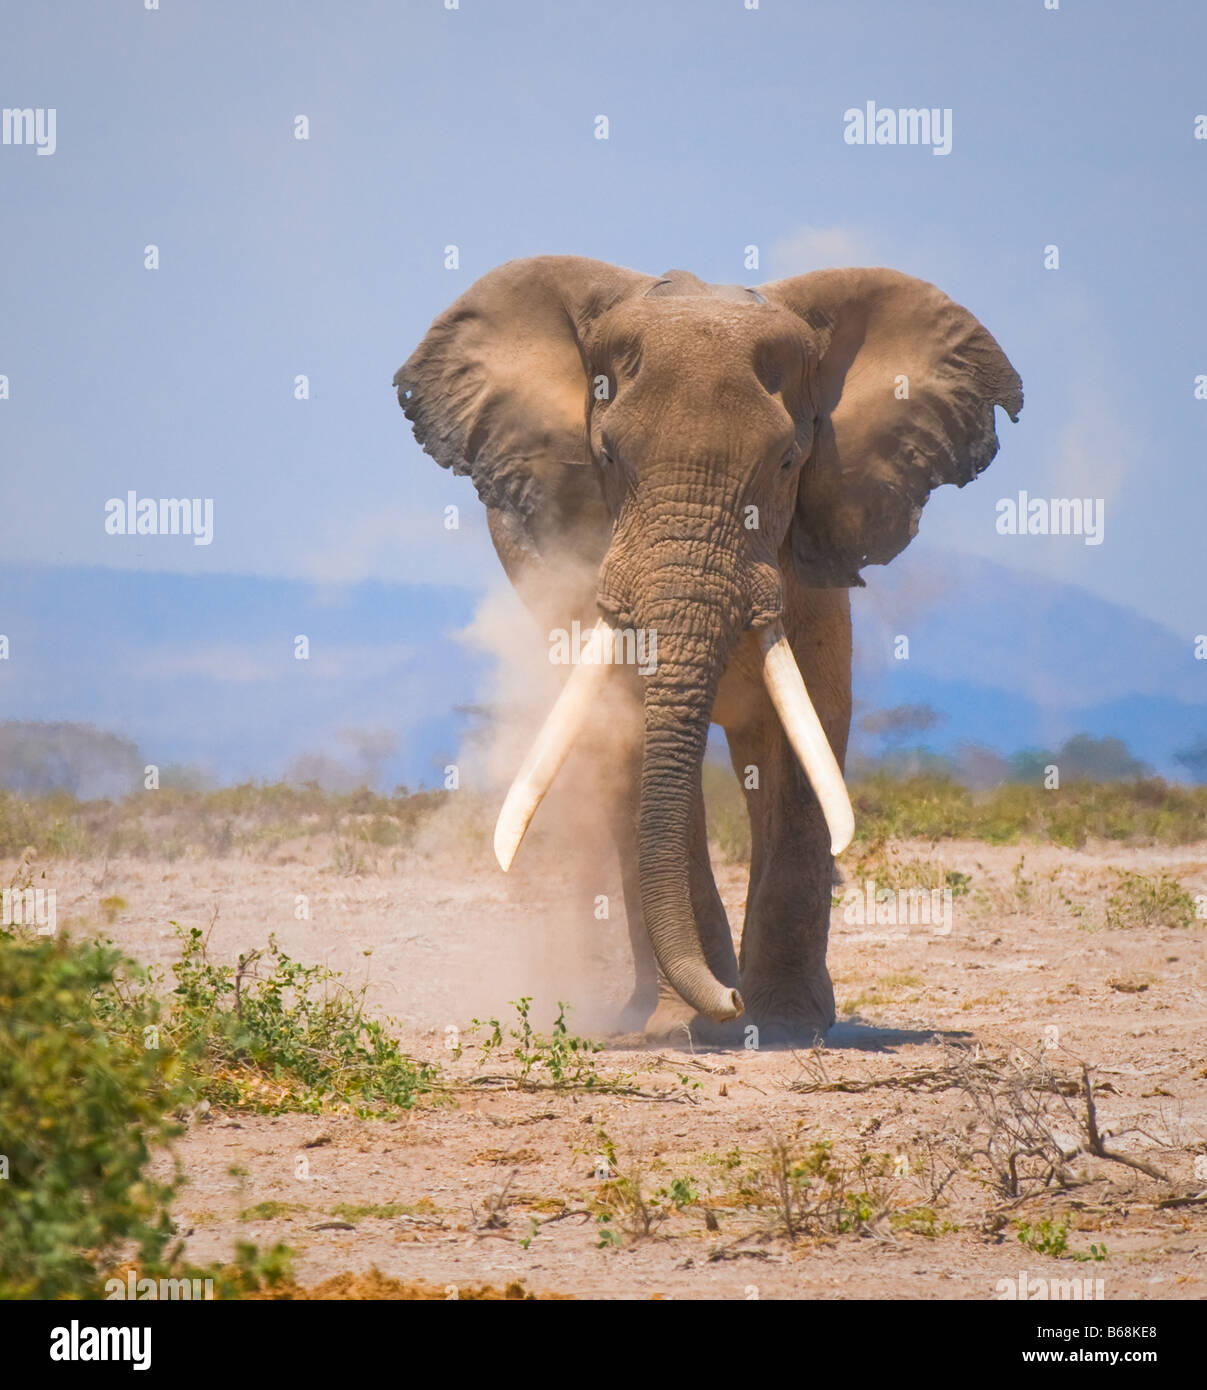 old elephant amboseli national park kenya Stock Photo